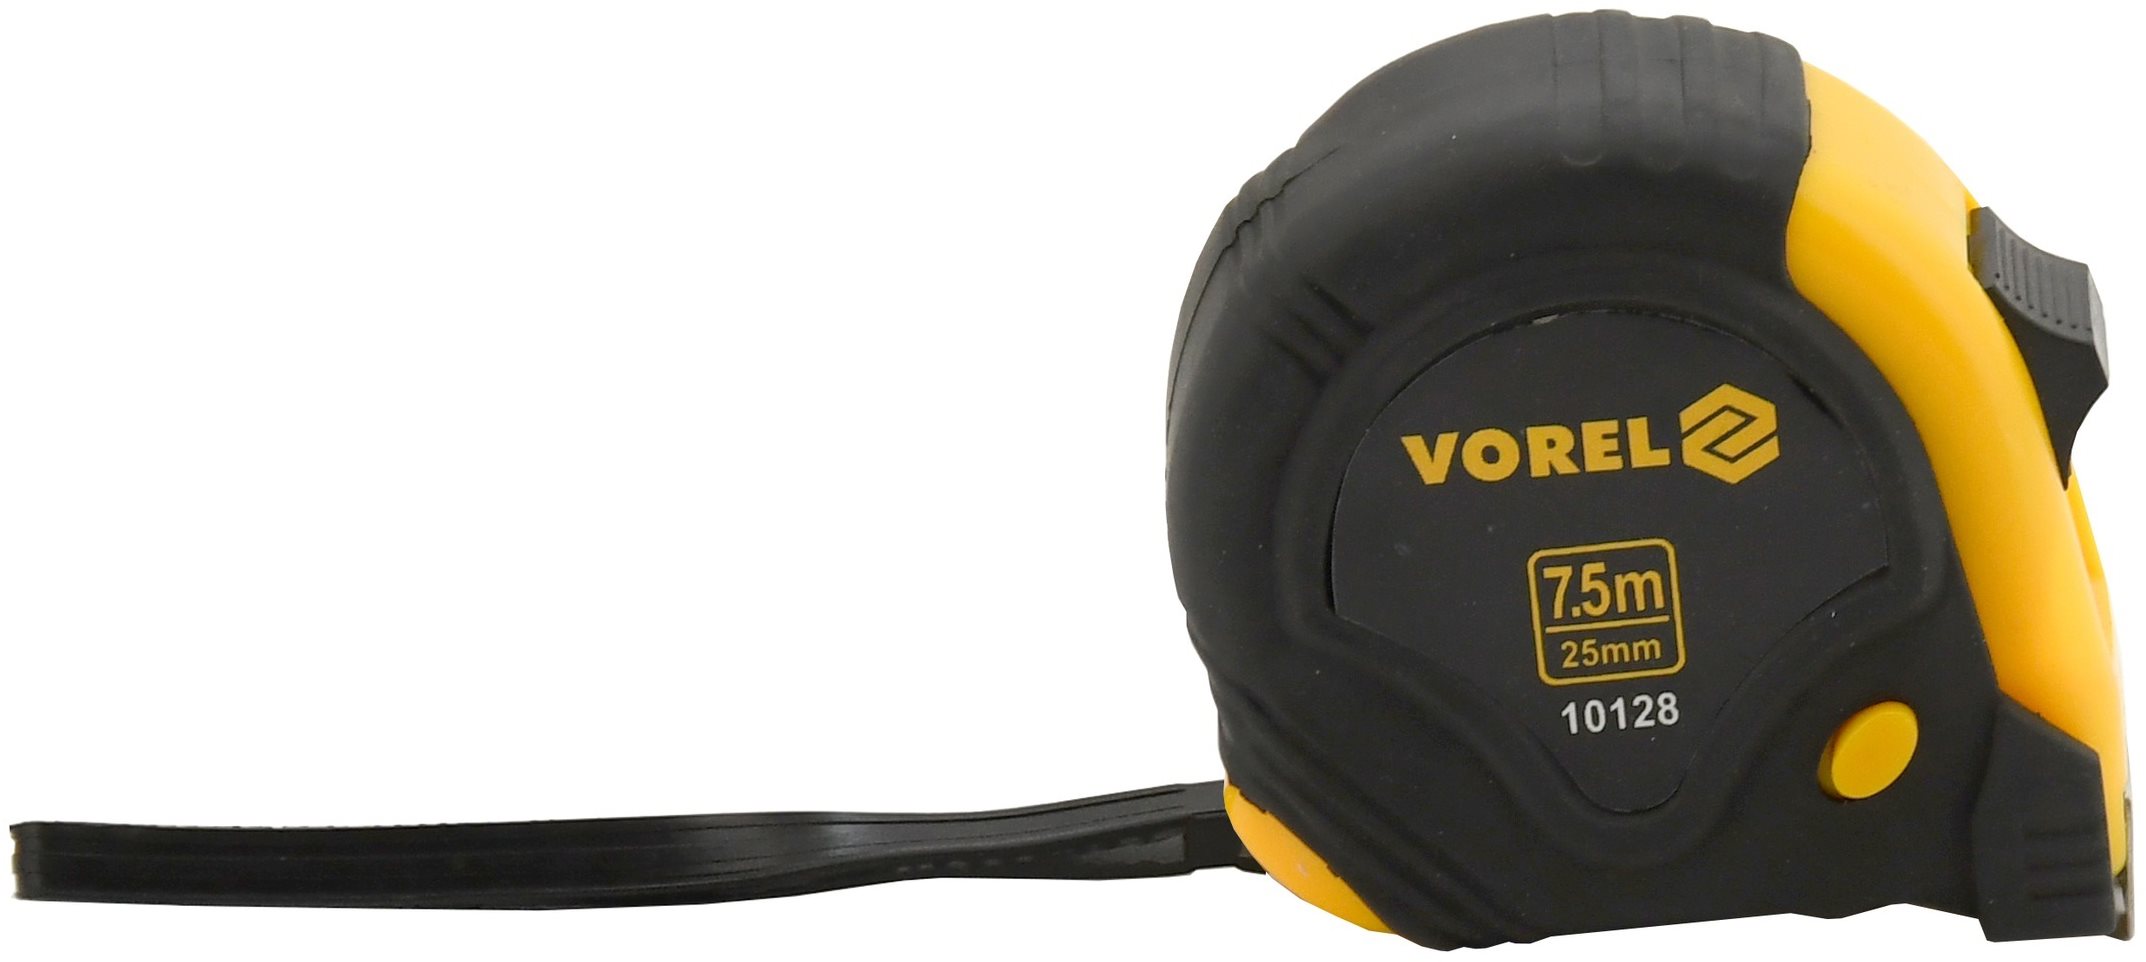 Vorel mérőszalag, 7,5 m x 25 mm, sárga - fekete színben